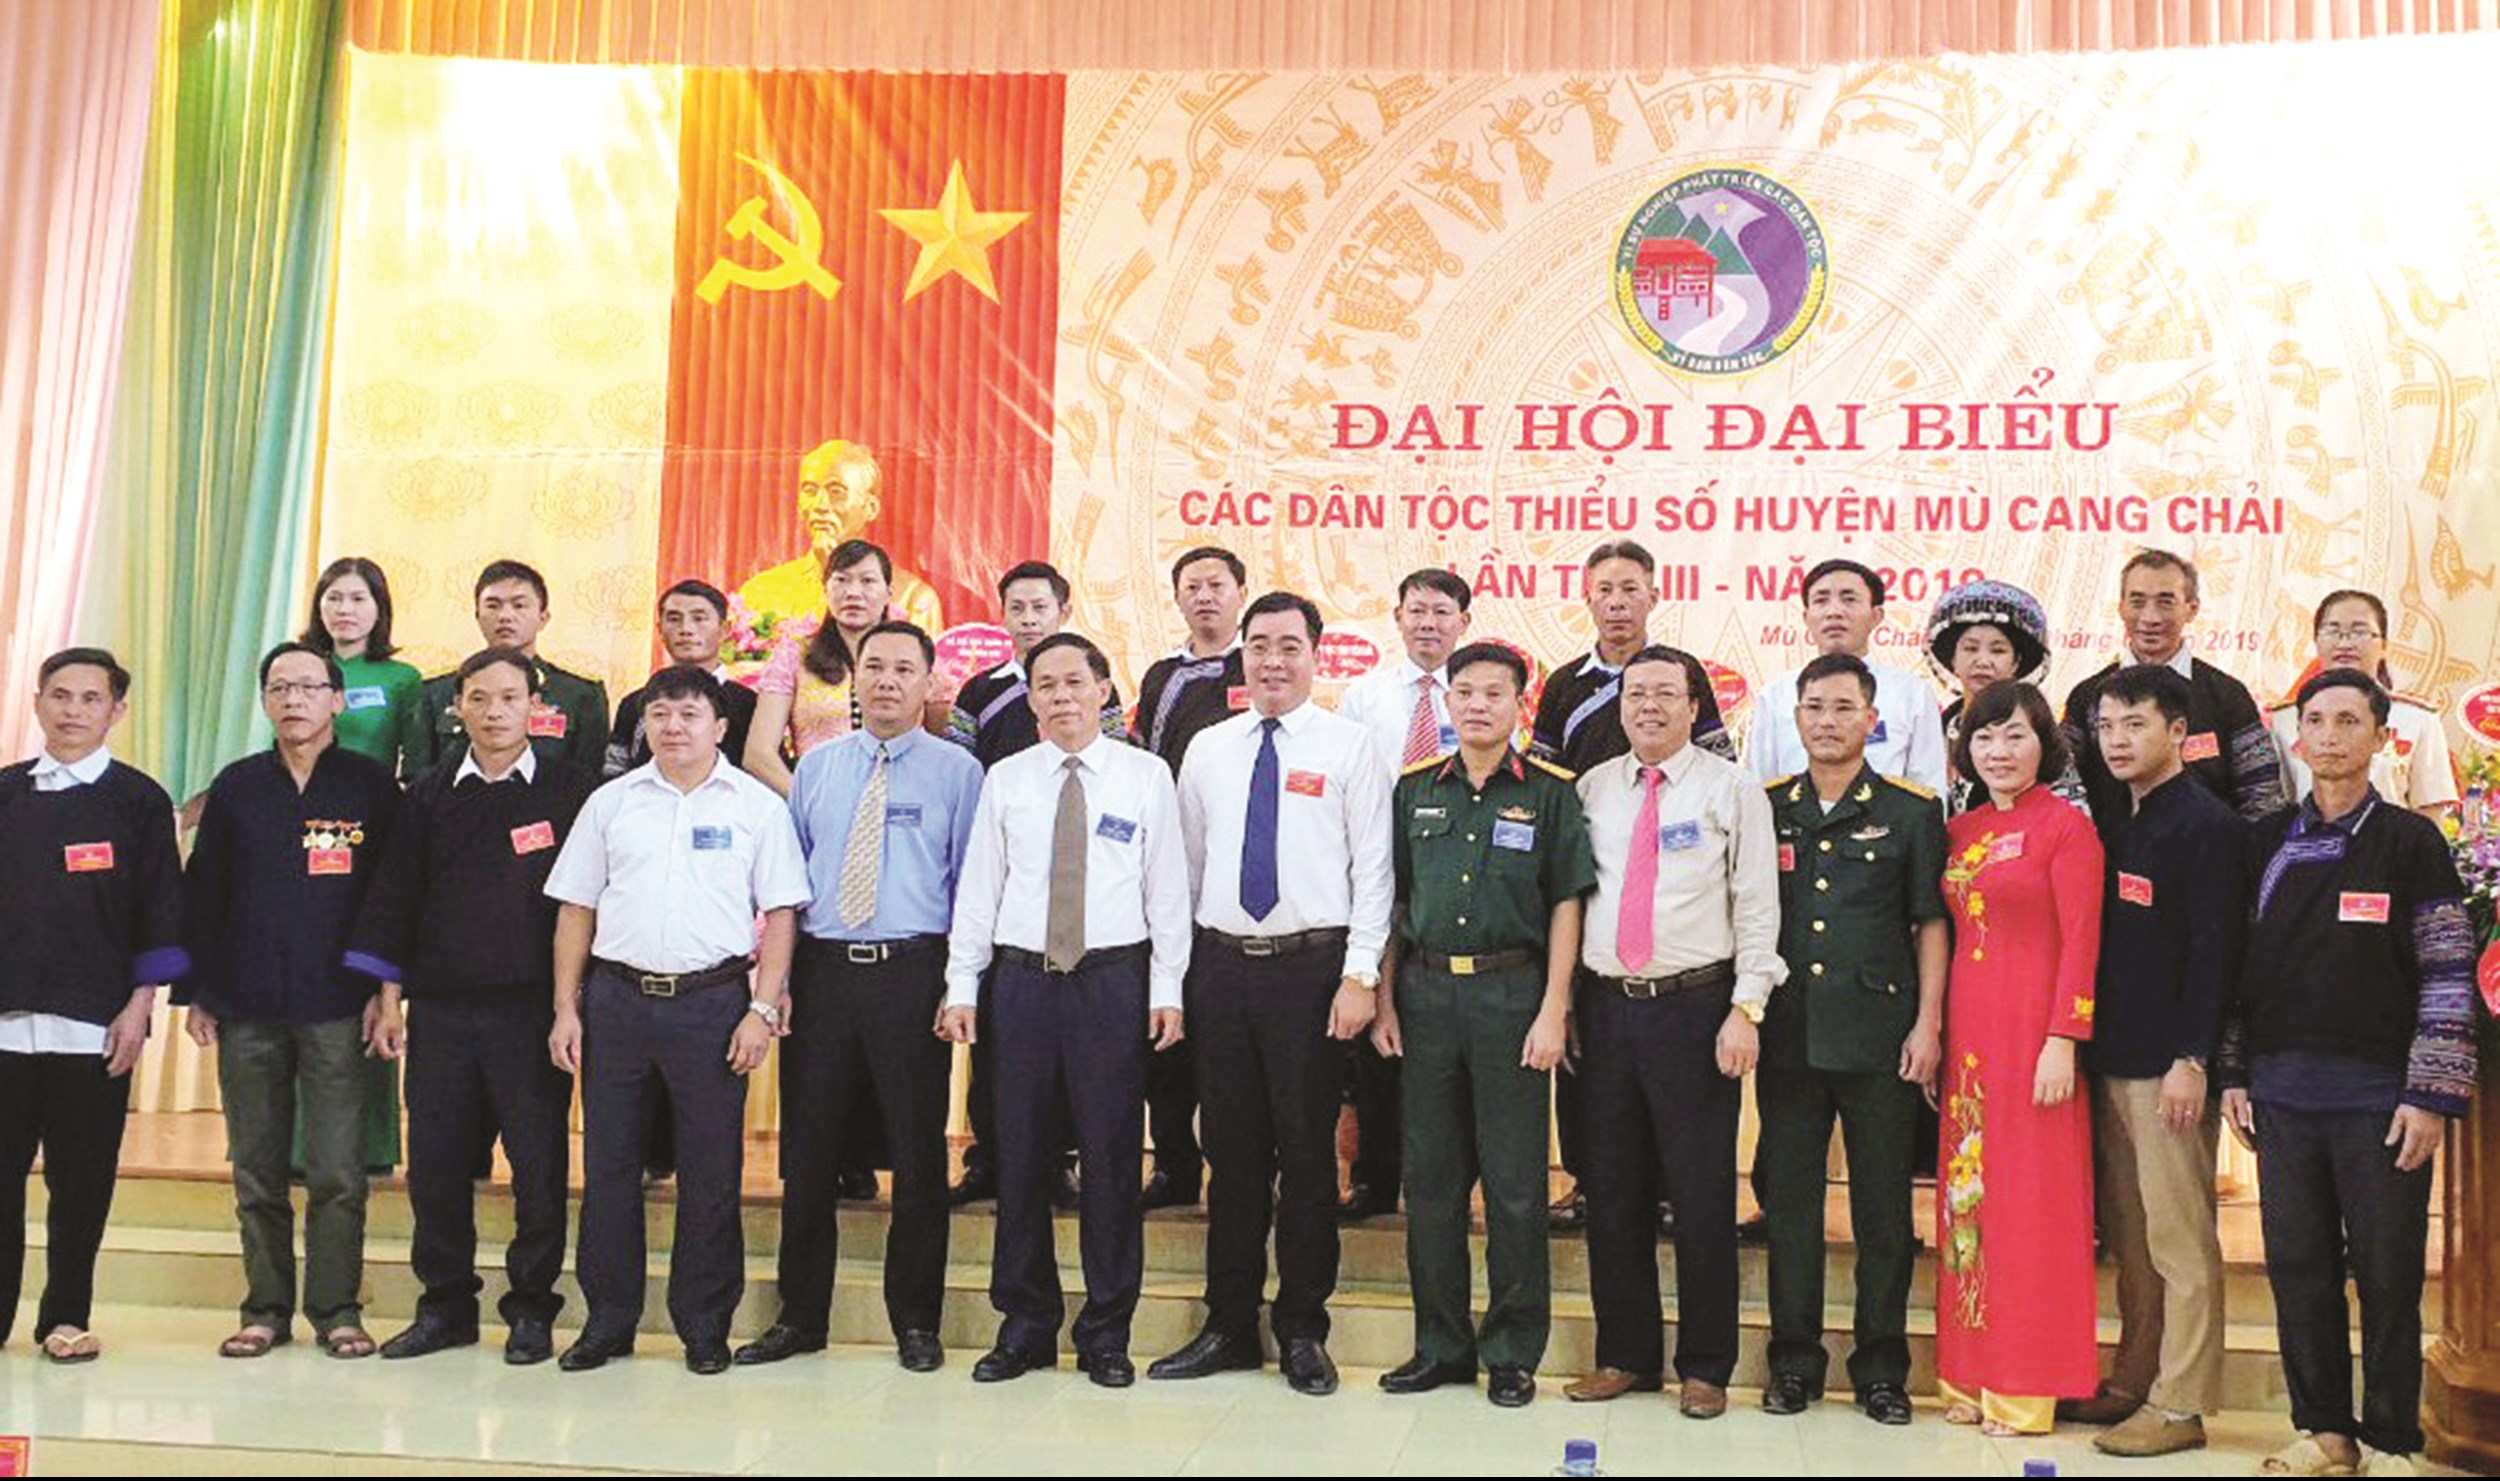 Ông Nông Việt Yên (đứng thứ 7 hàng đầu từ trái sang), Bí thư Huyện ủy Mù Cang Chải chụp ảnh lưu niệm với đại biểu tại Đại hội các DTTS huyện Mù Cang Chải (tháng 6/2019). 